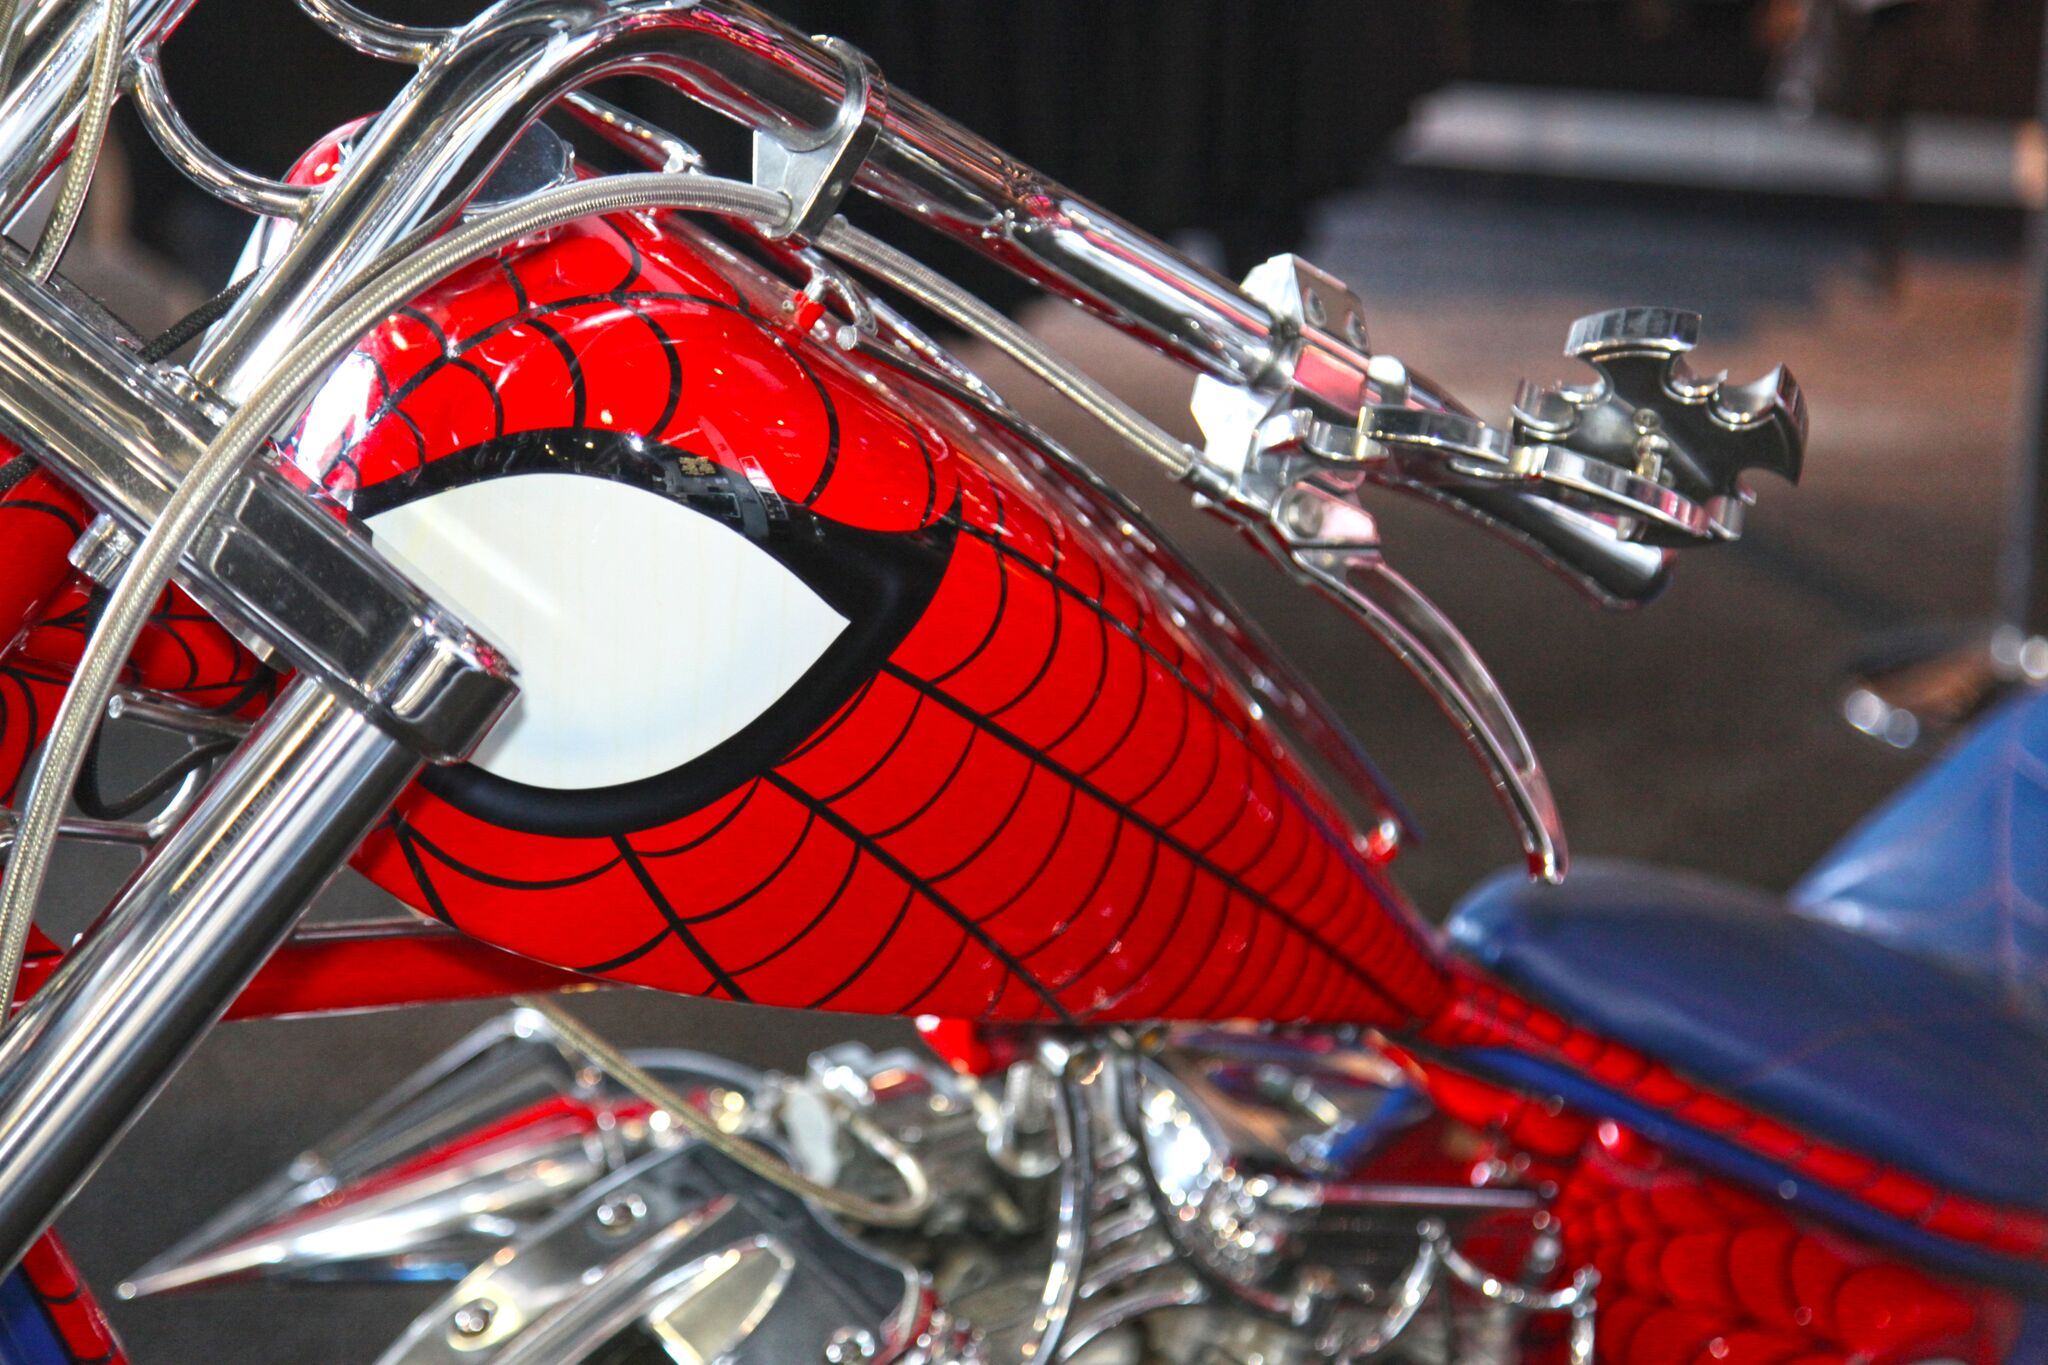 spiderman chopper bike